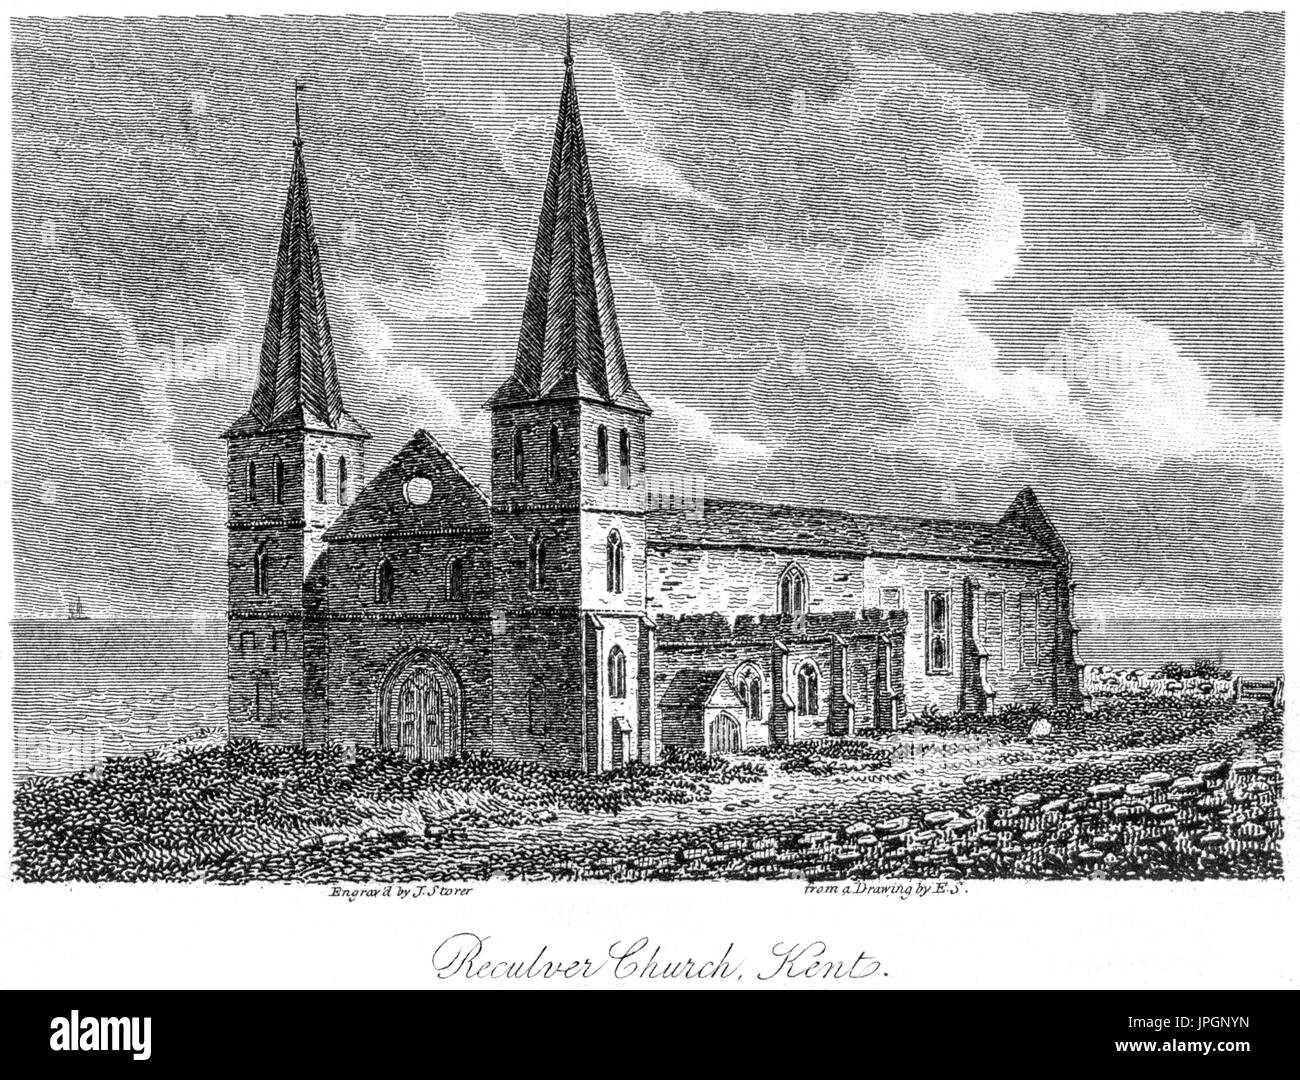 Ein Kupferstich von Reculver Kirche, Kent gescannt und in hoher Auflösung aus einem Buch im Jahre 1808 gedruckt. Glaubten copyright frei. Stockfoto